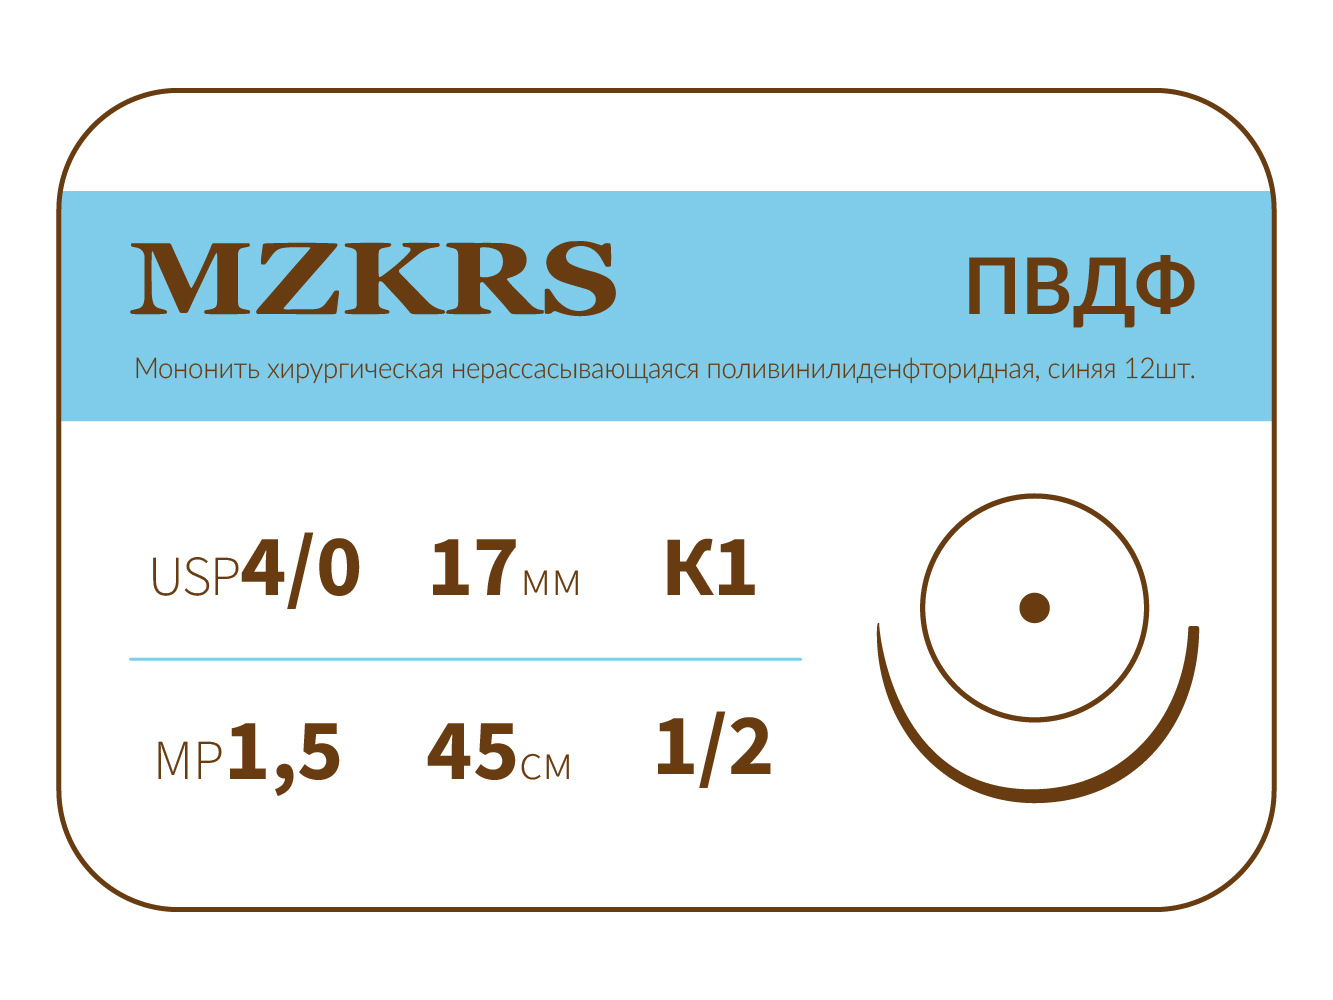 1712К1-Premium-4/0 (1.5)45 ПВДФ хирургическая нить поливинилиденфторидная, MZKRS (Россия)